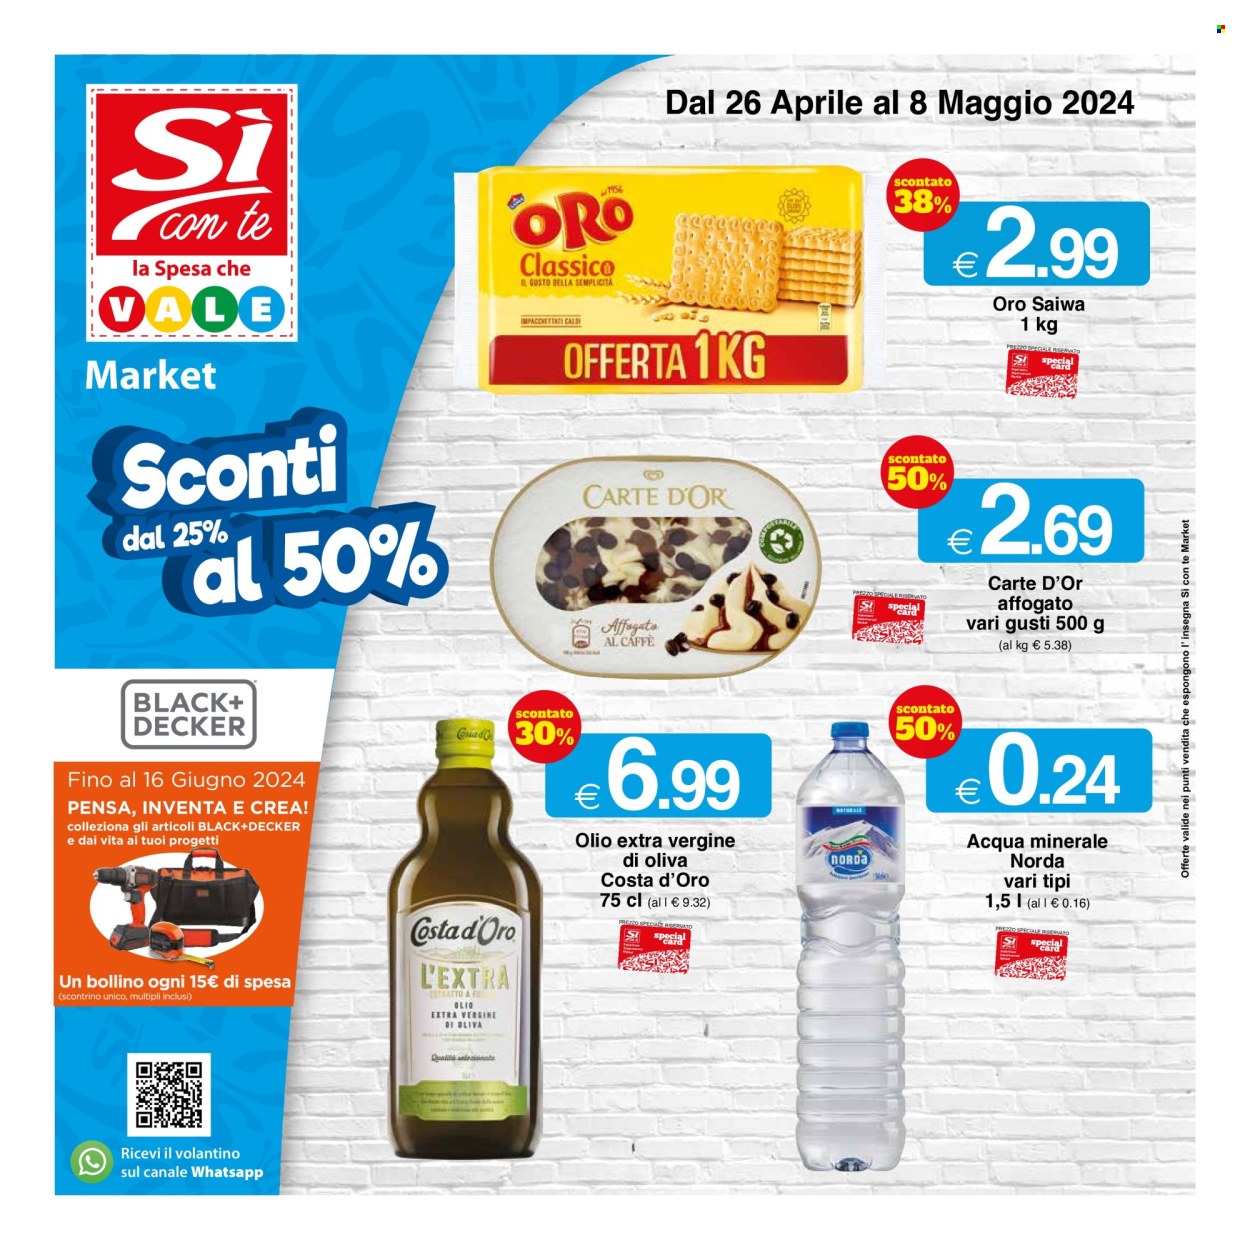 thumbnail - Volantino Si con te Market - 26/4/2024 - 8/5/2024 - Prodotti in offerta - Carte d'Or, Oro Saiwa, olio, olio extra vergine di oliva, acqua minerale, Norda. Pagina 1.